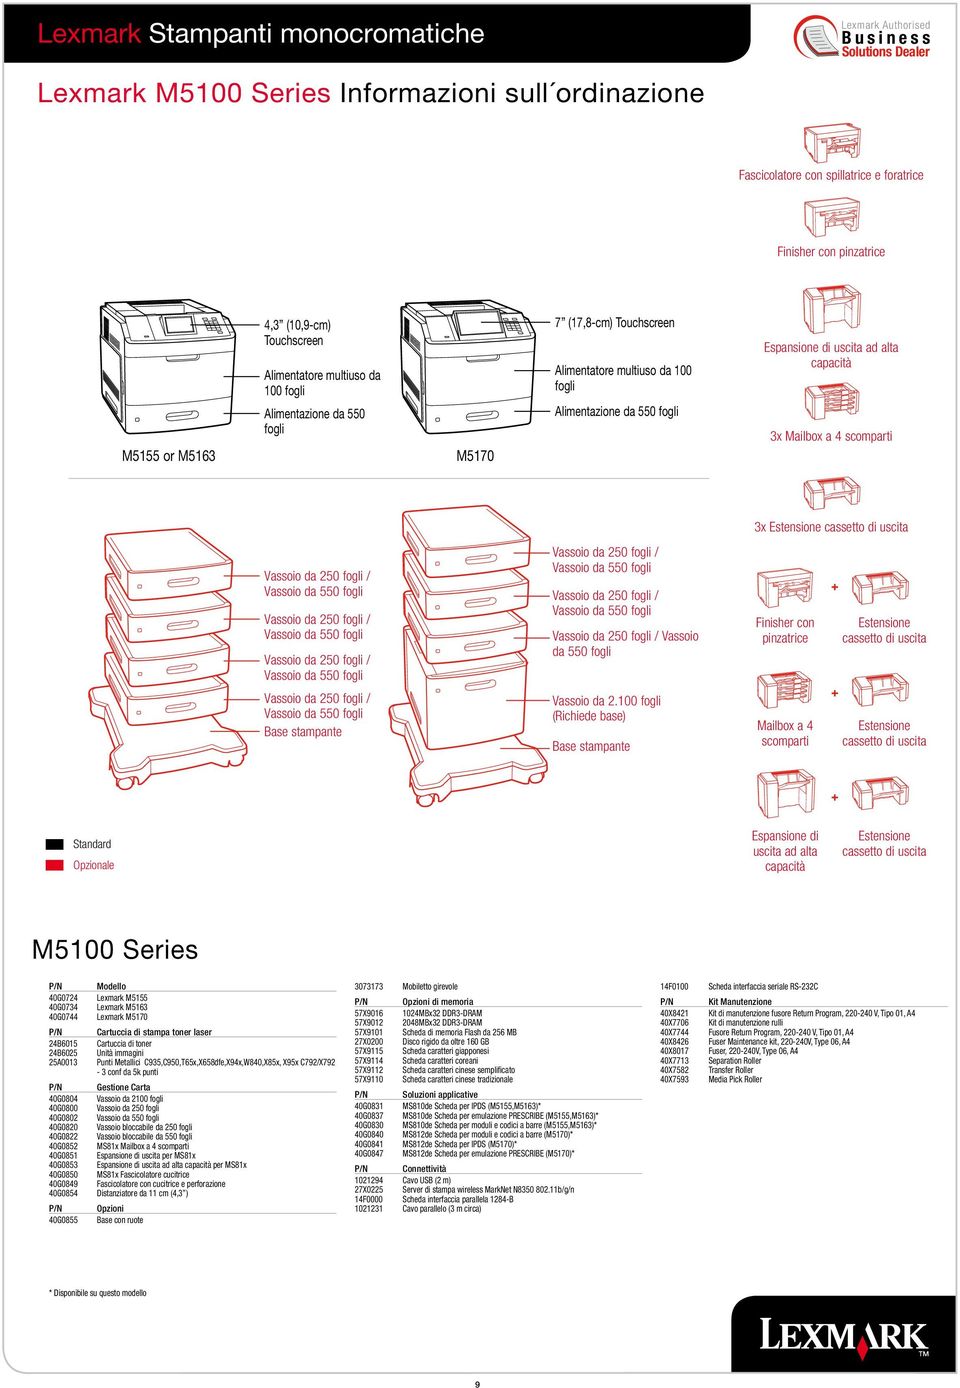 Mailbox a 4 scomparti 3x Estensione cassetto di uscita Vassoio da 250 fogli / Vassoio da 250 fogli / Vassoio da 250 fogli / Vassoio da 250 fogli / Base stampante Vassoio da 250 fogli / Vassoio da 250